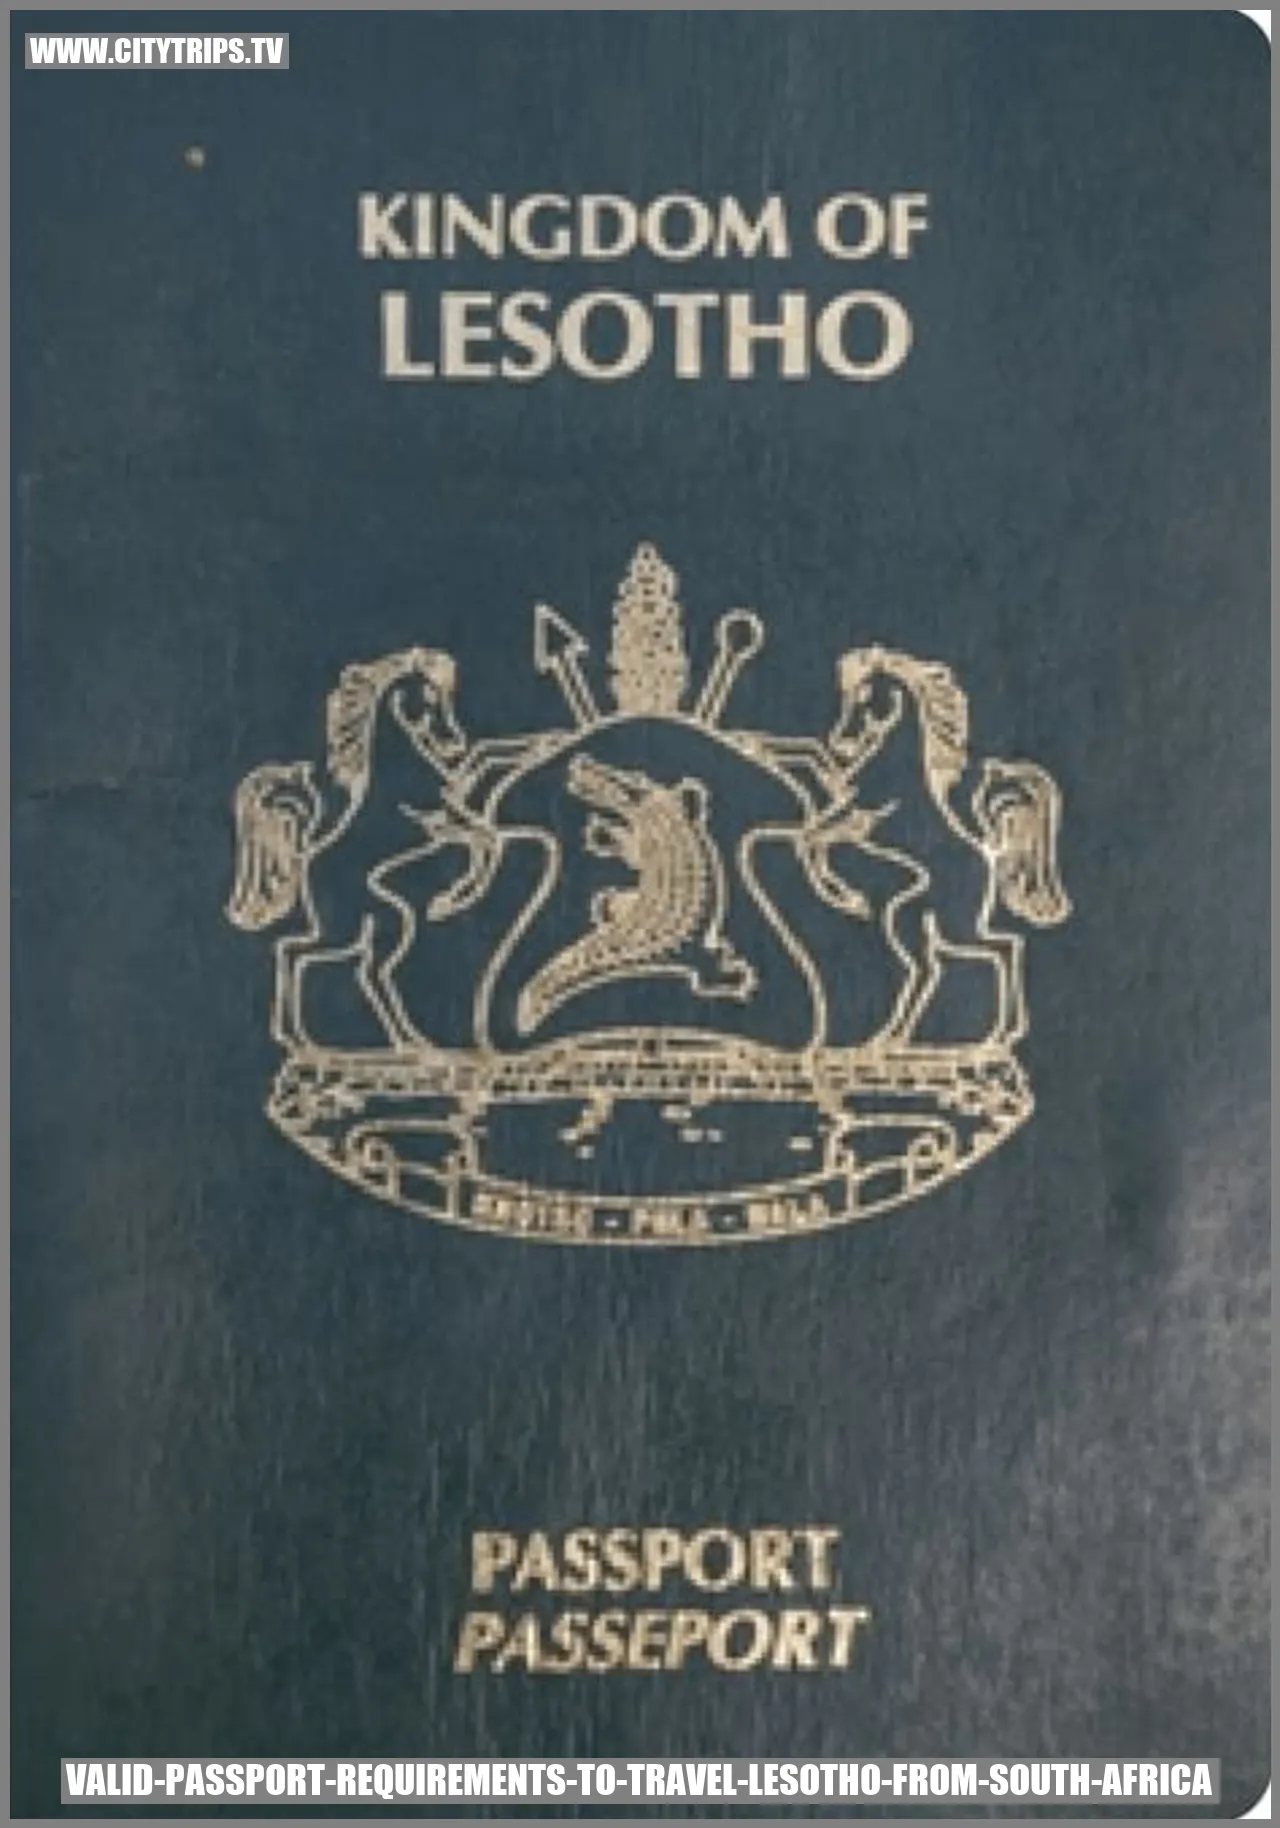 Valid Passport Requirements